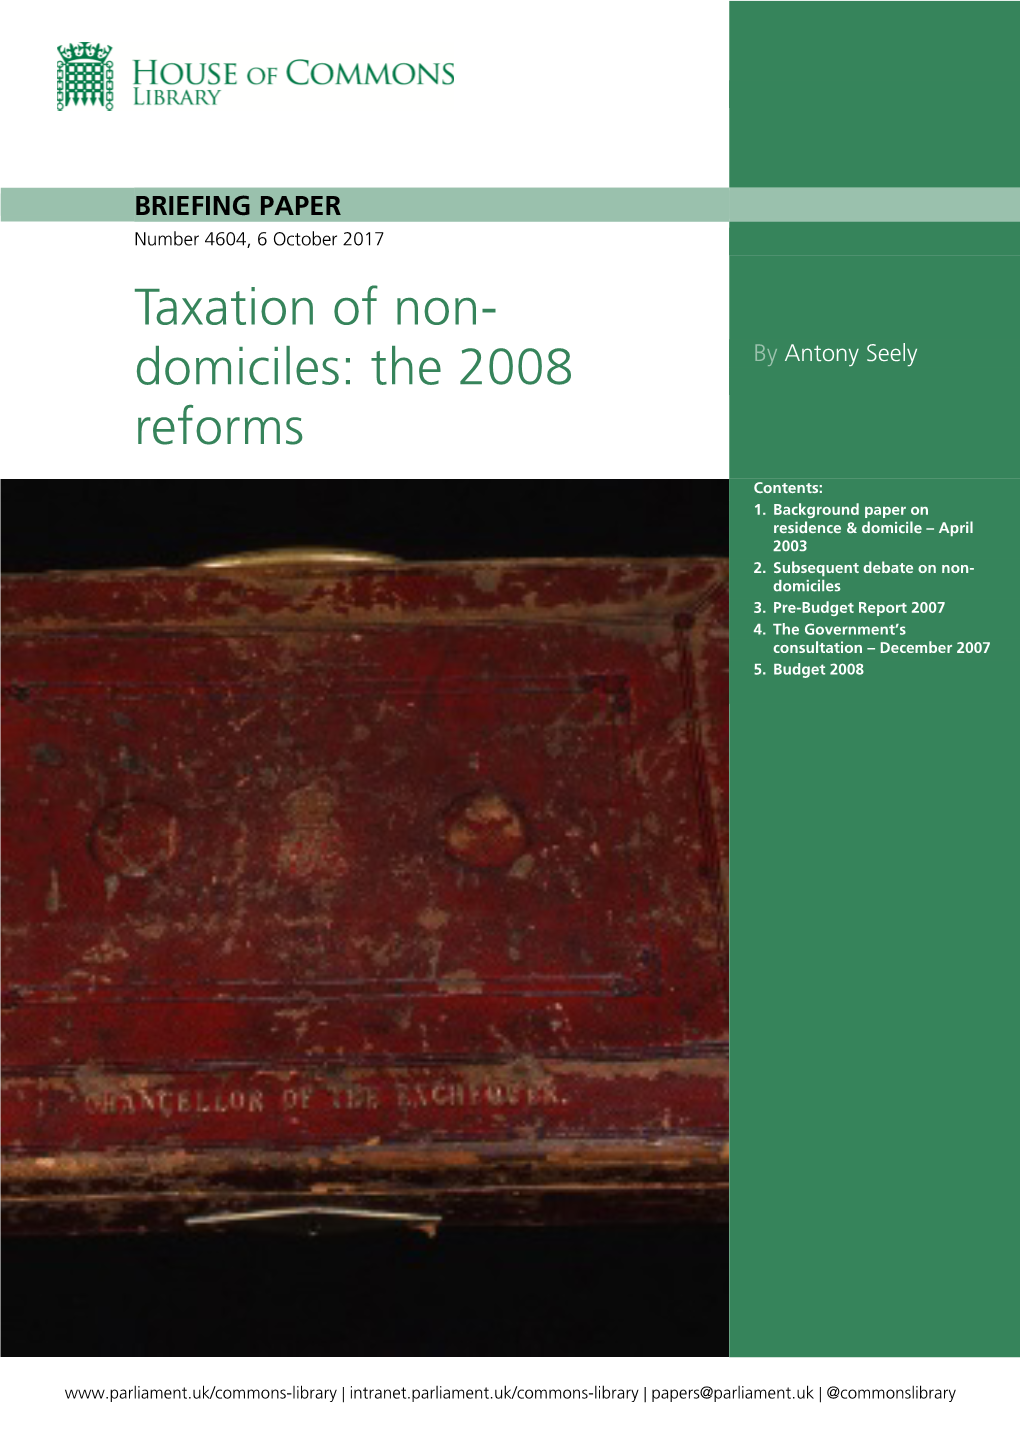 Taxation of Non-Domiciles: the 2008 Reforms